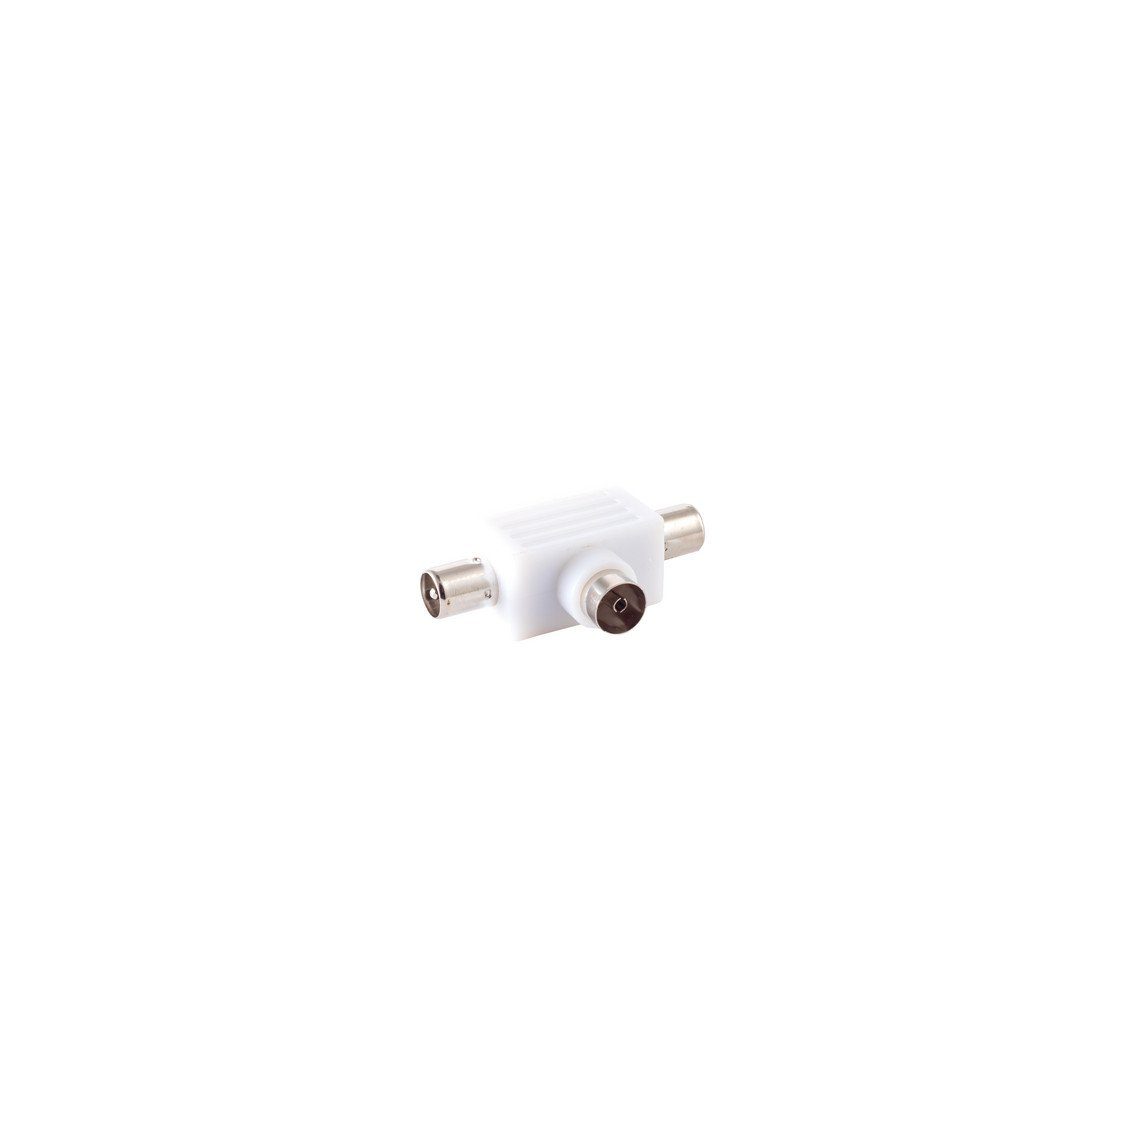 T-Verteiler, Kupplung Koax-Kabelverbinder maximum connectivity® 2 Stecker S/CONN x und 1x